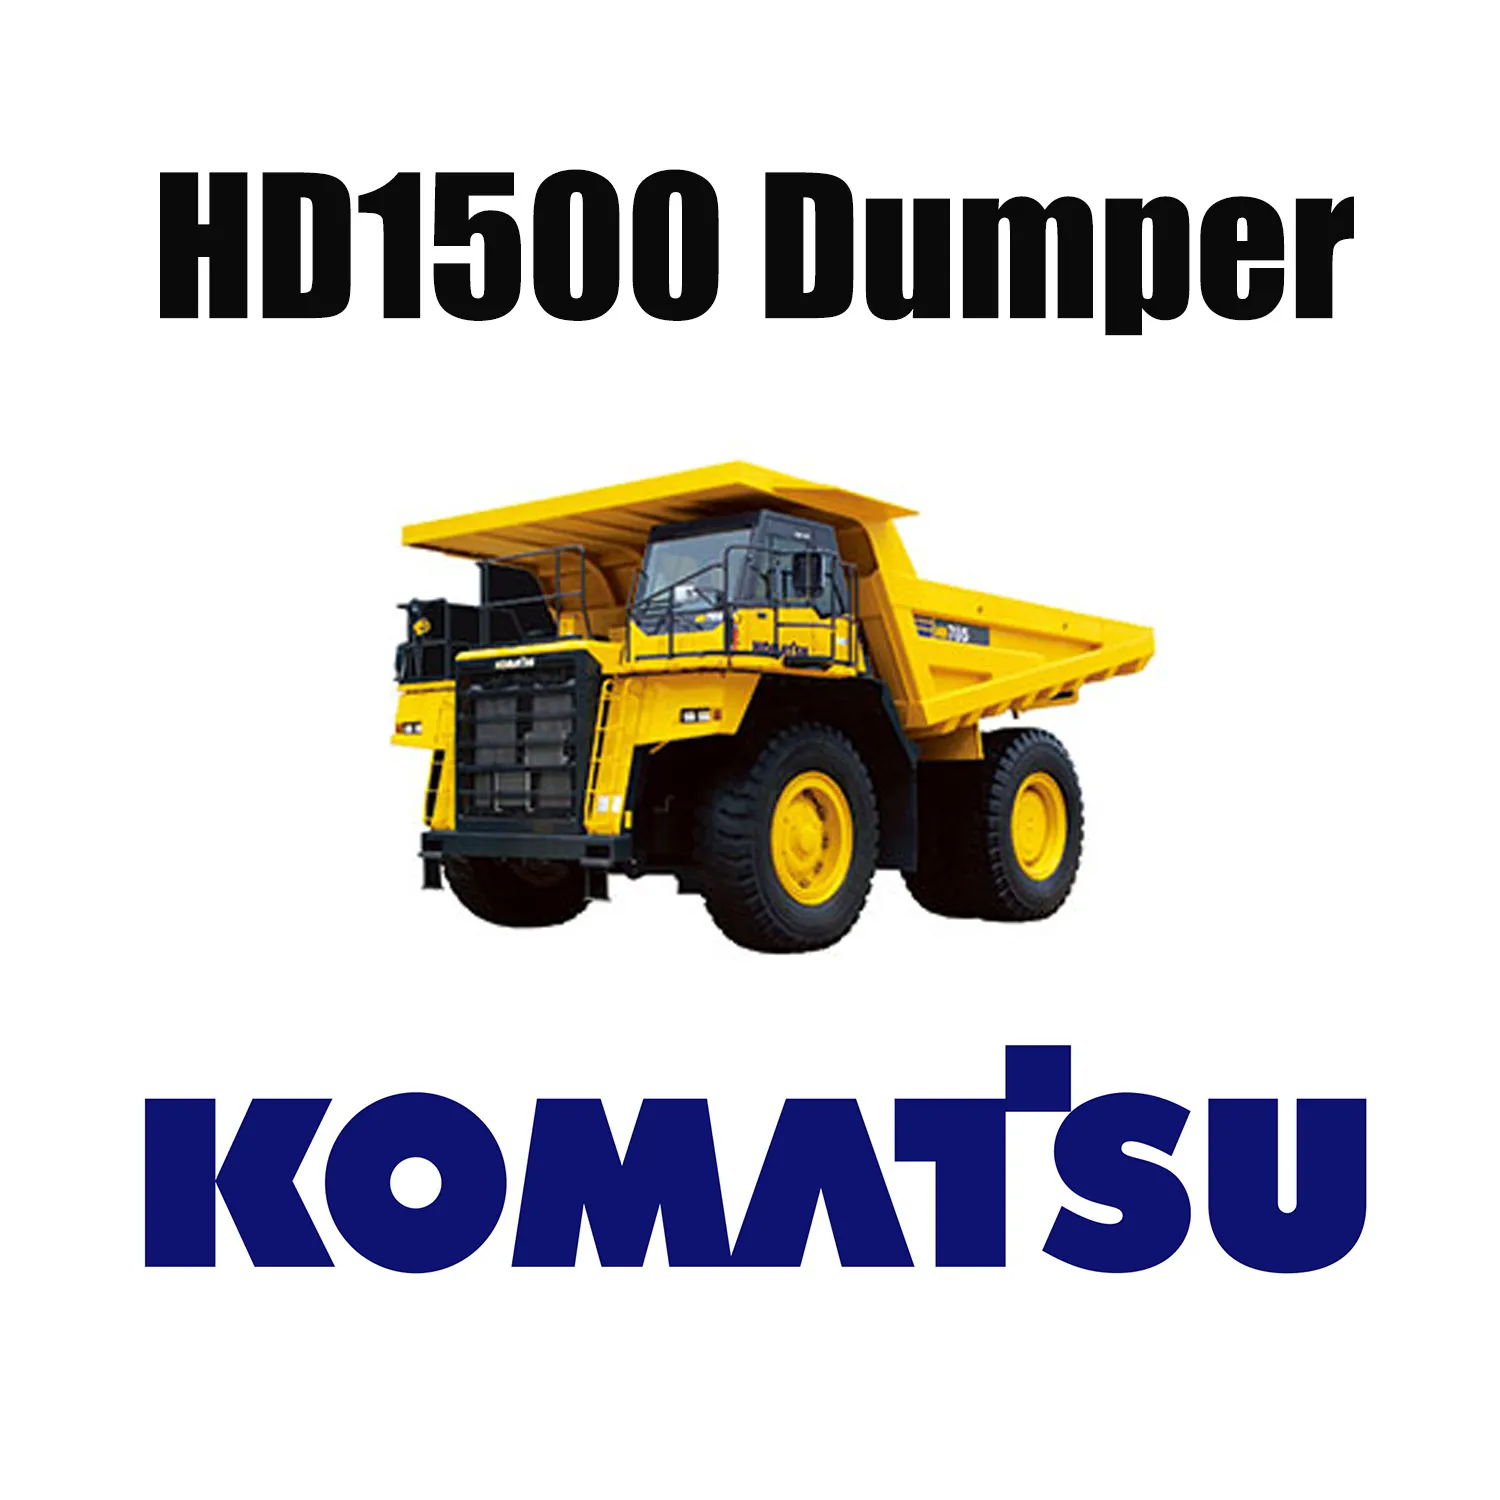 Camion mécanique KOMATSU HD1500 équipé de pneus de terrassement spécialisés 33.00R51